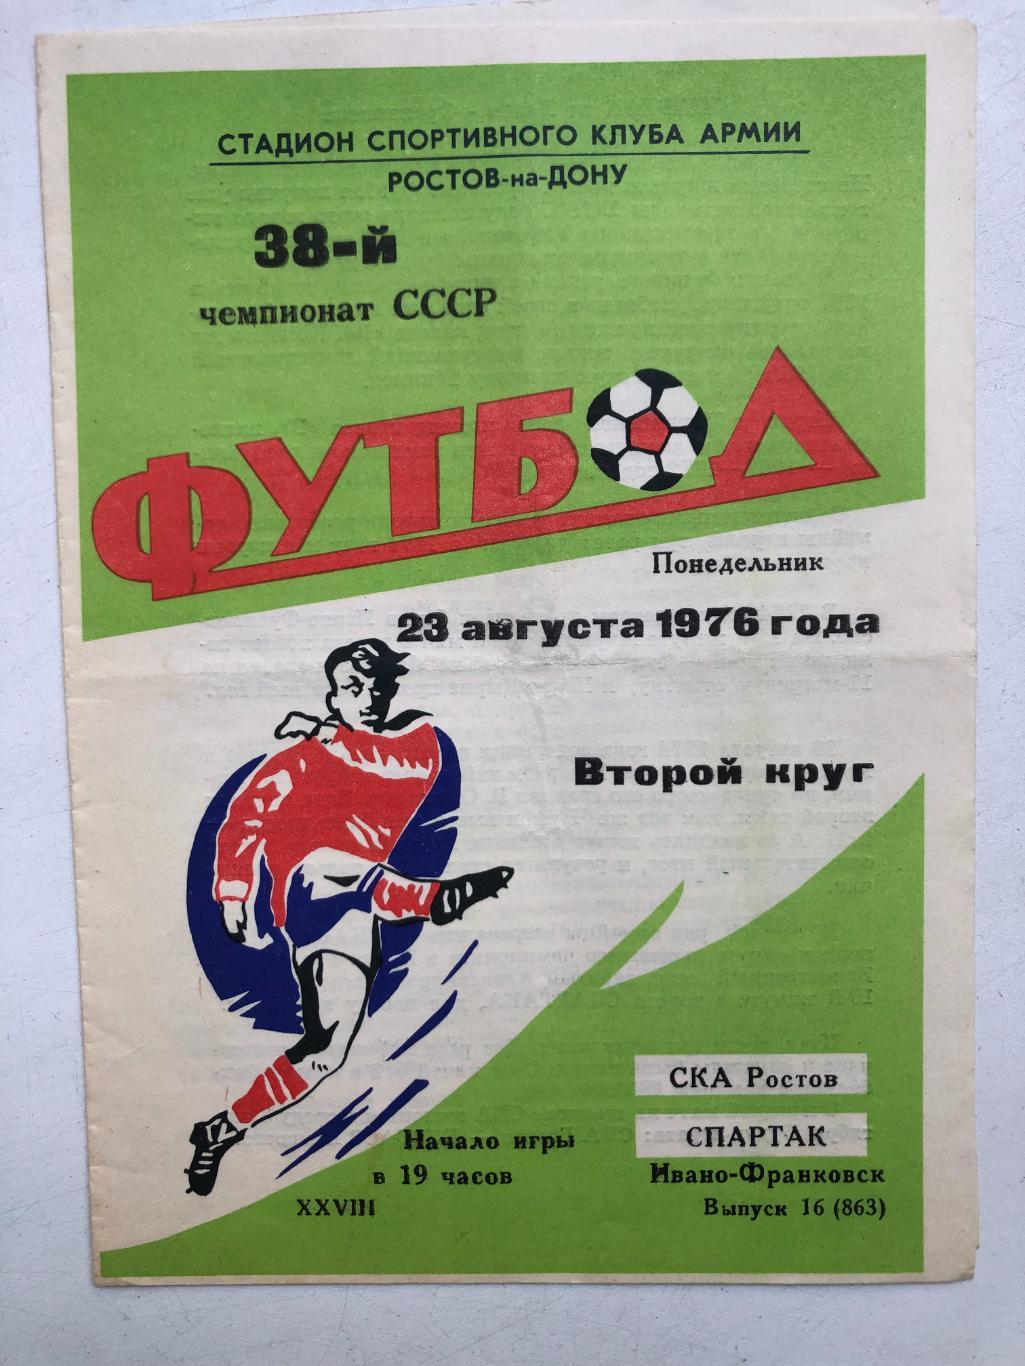 СКА Ростов - Спартак Ивано-Франковск 23.08.1976